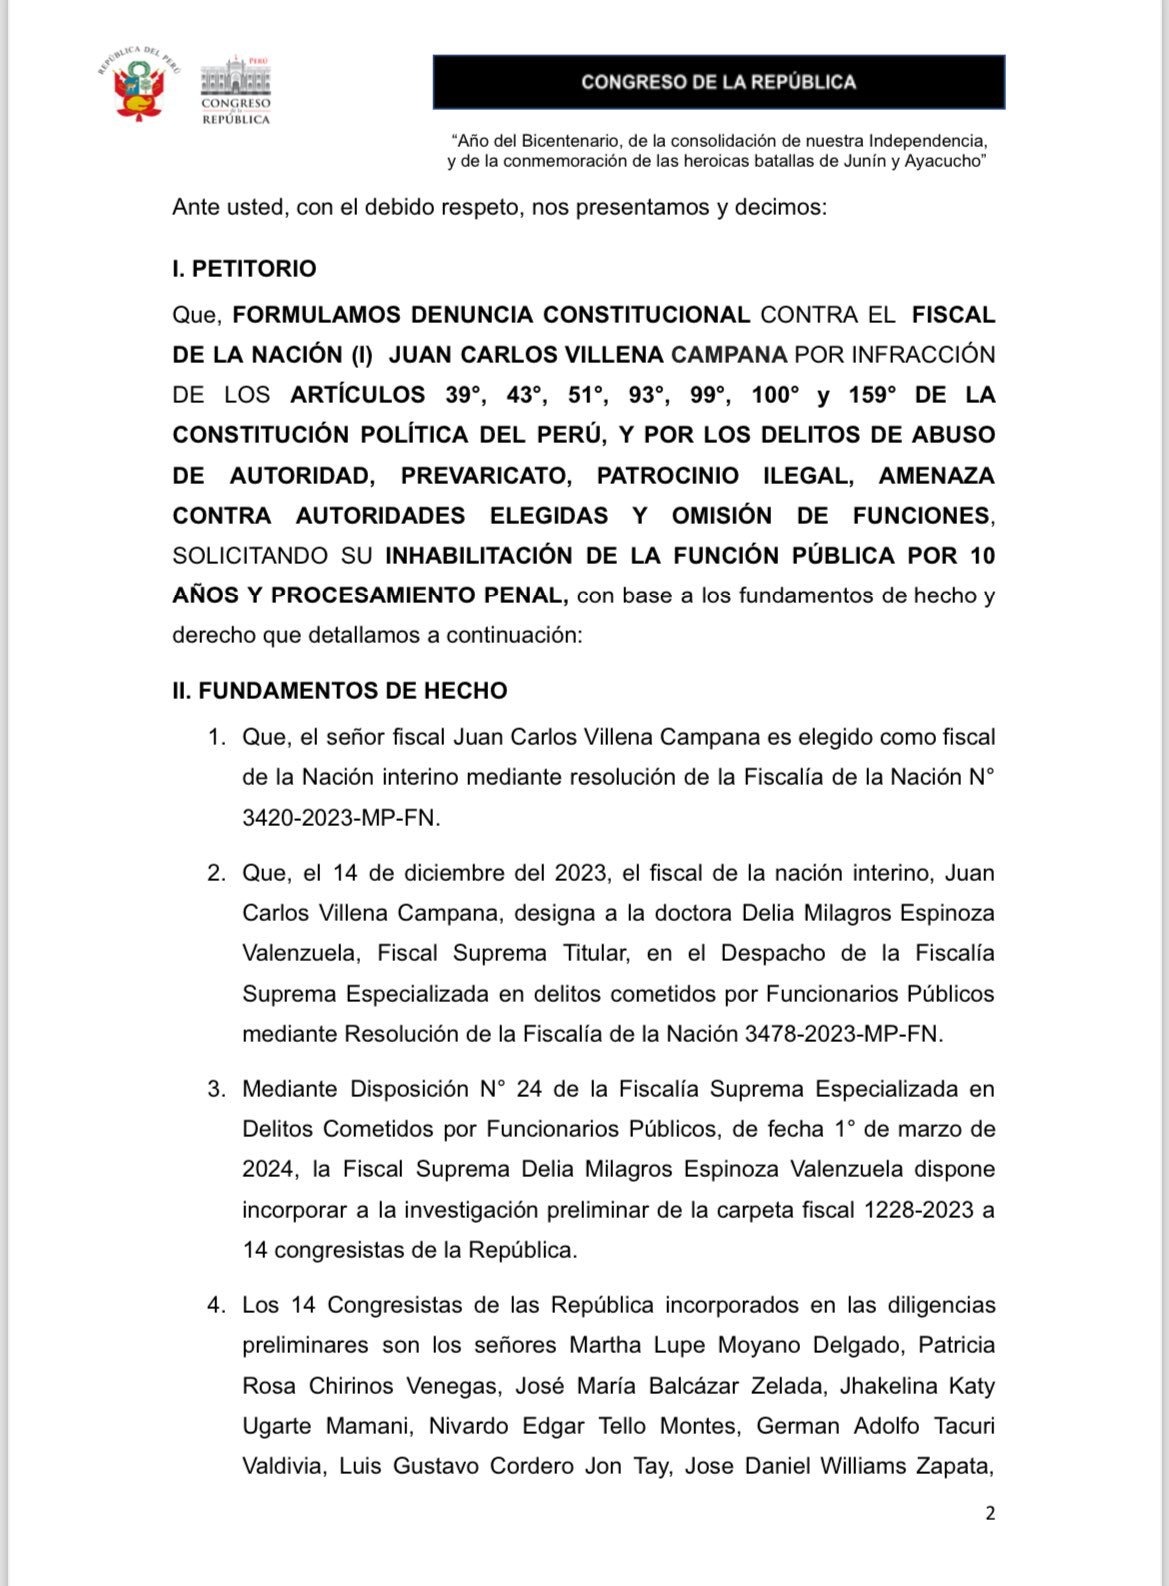 Juan Carlos Villena: Patricia Chirinos y otros 5 congresistas presentan denuncia constitucional contra fiscal de la Nación interino